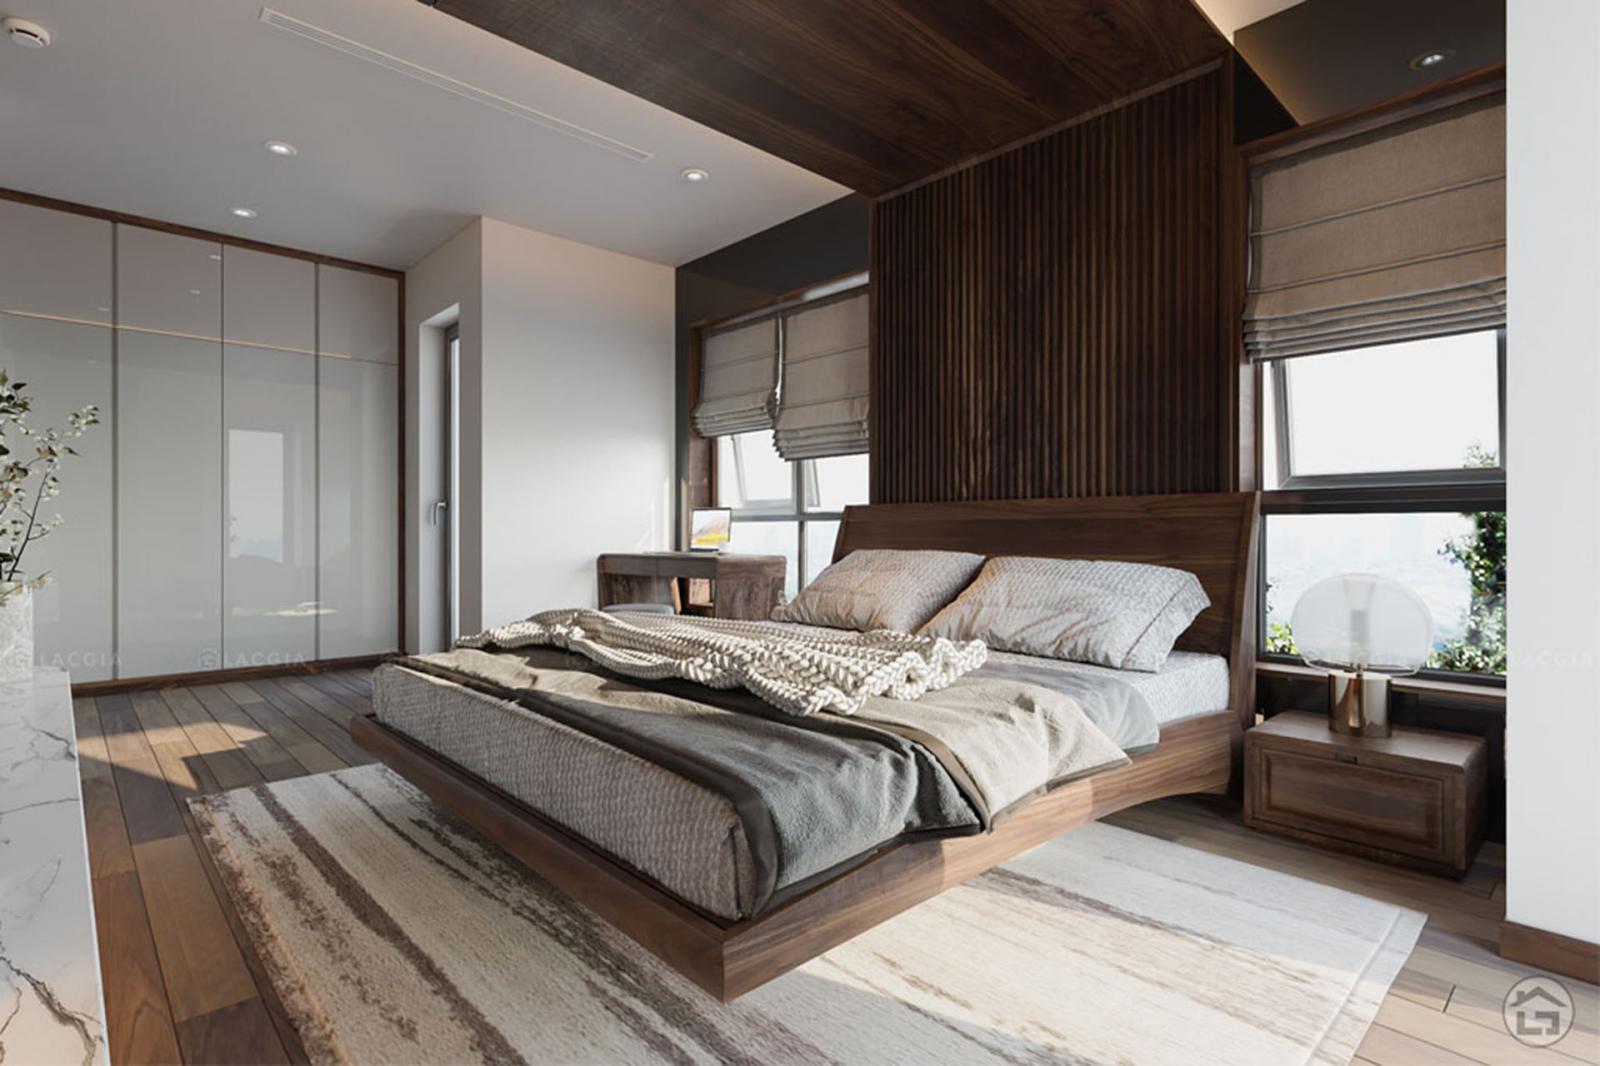 Phòng ngủ master phong cách tối giản với bảng màu trung tính nhẹ nhàng, mang lại cảm giác thư thái, dễ chịu cho gia chủ.